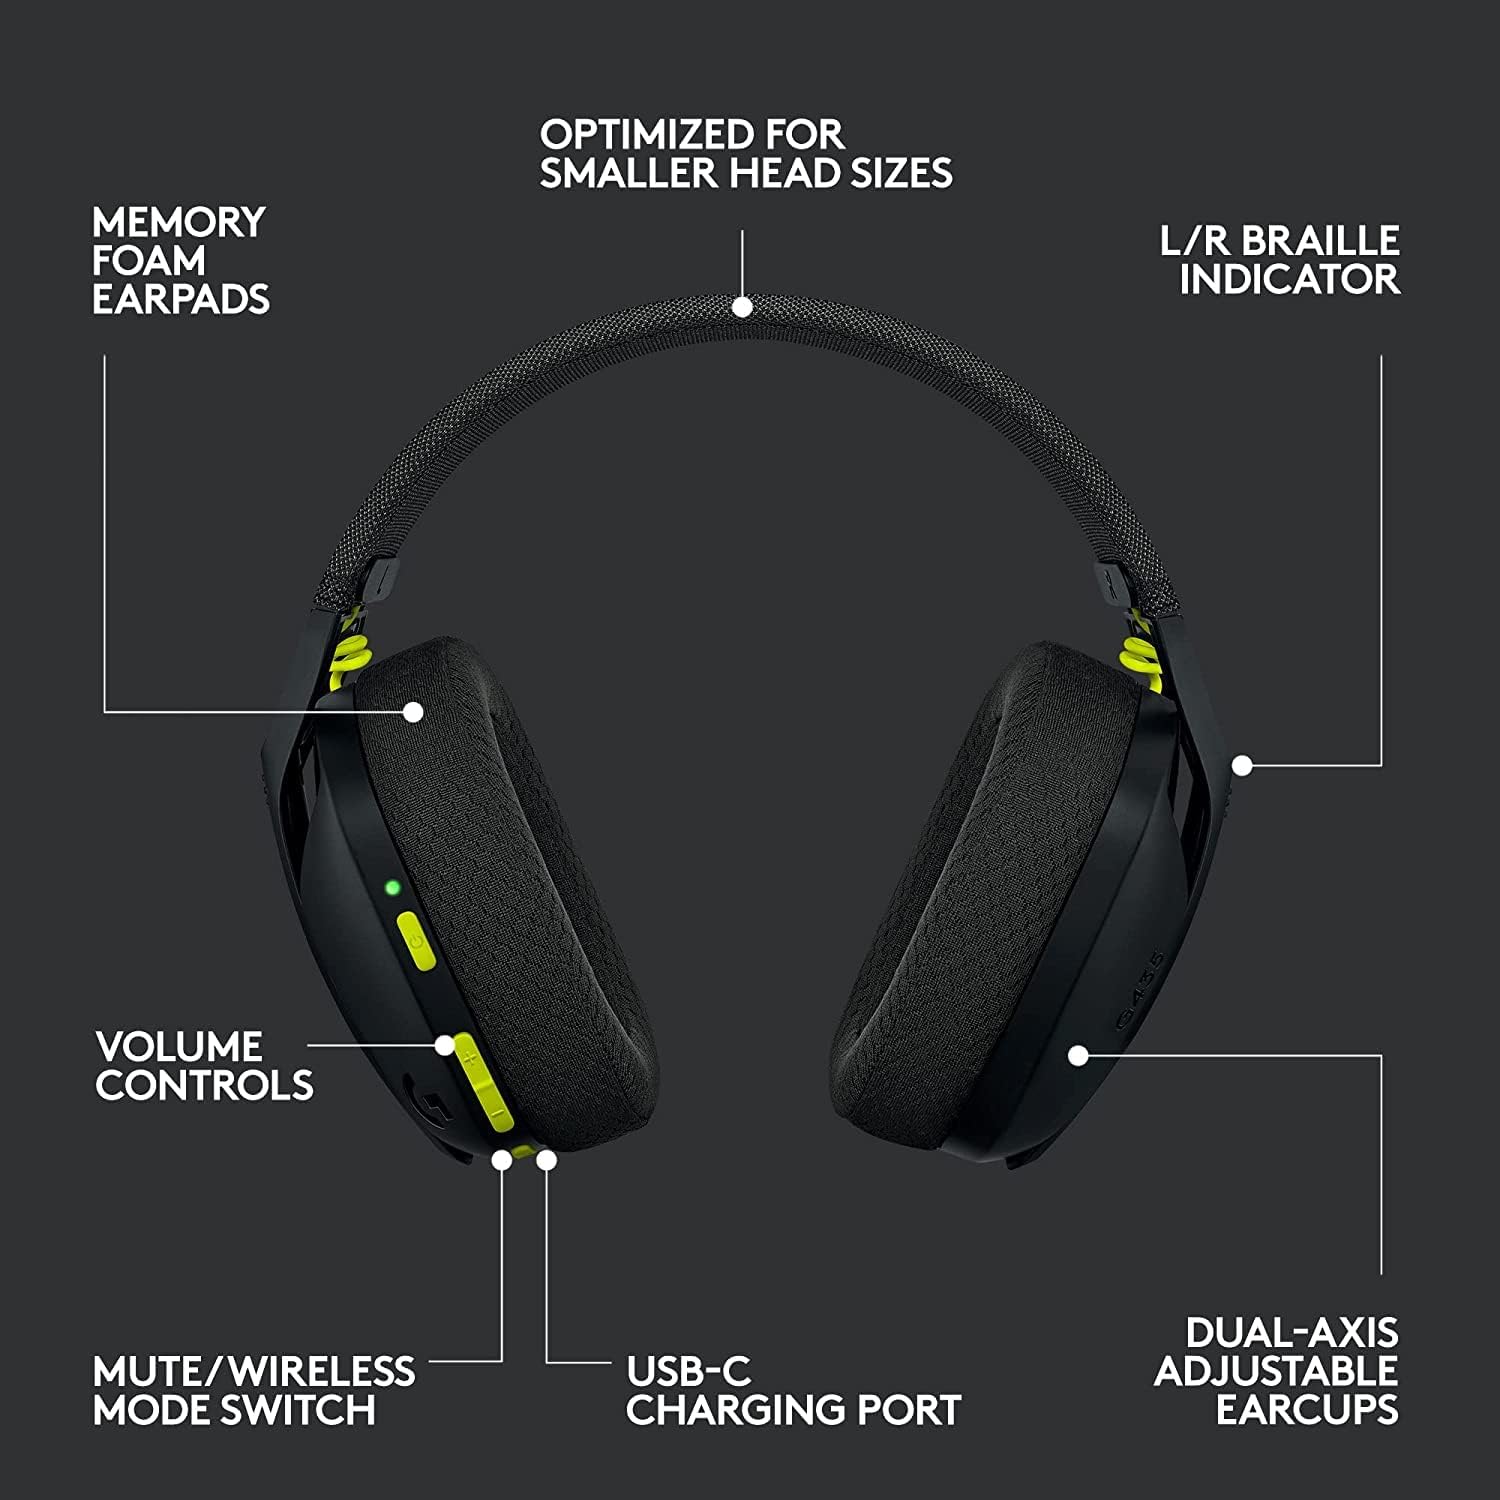 Probe of Hlavní název produktu: Logitech G435 Lightspeed and Bluetooth Wireless Gaming Headset